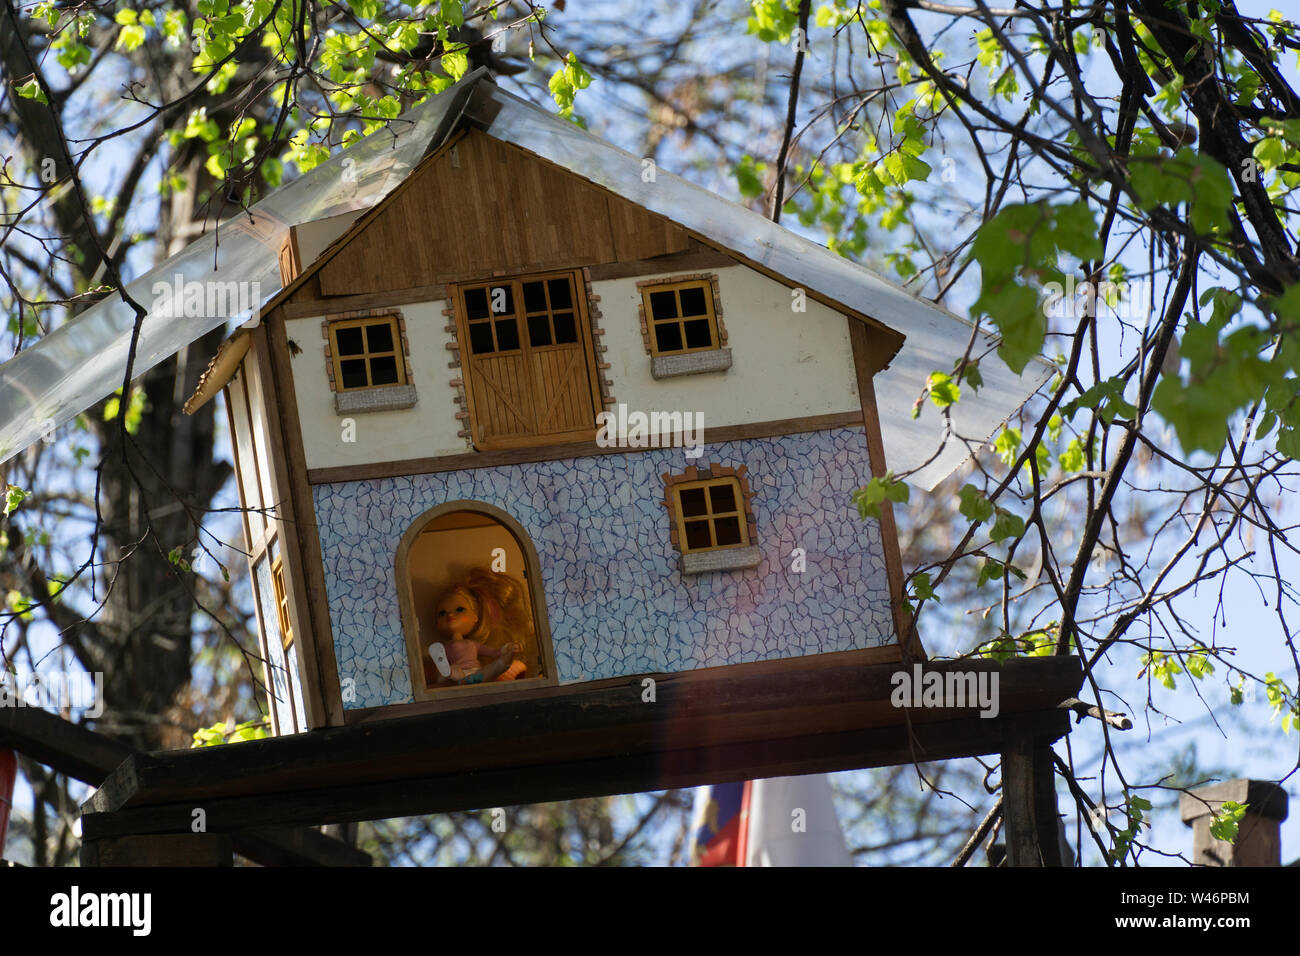 Holzspielzeug Haus hängen an einem Baum mit Baby Puppe in an einem sonnigen Tag Stockfoto